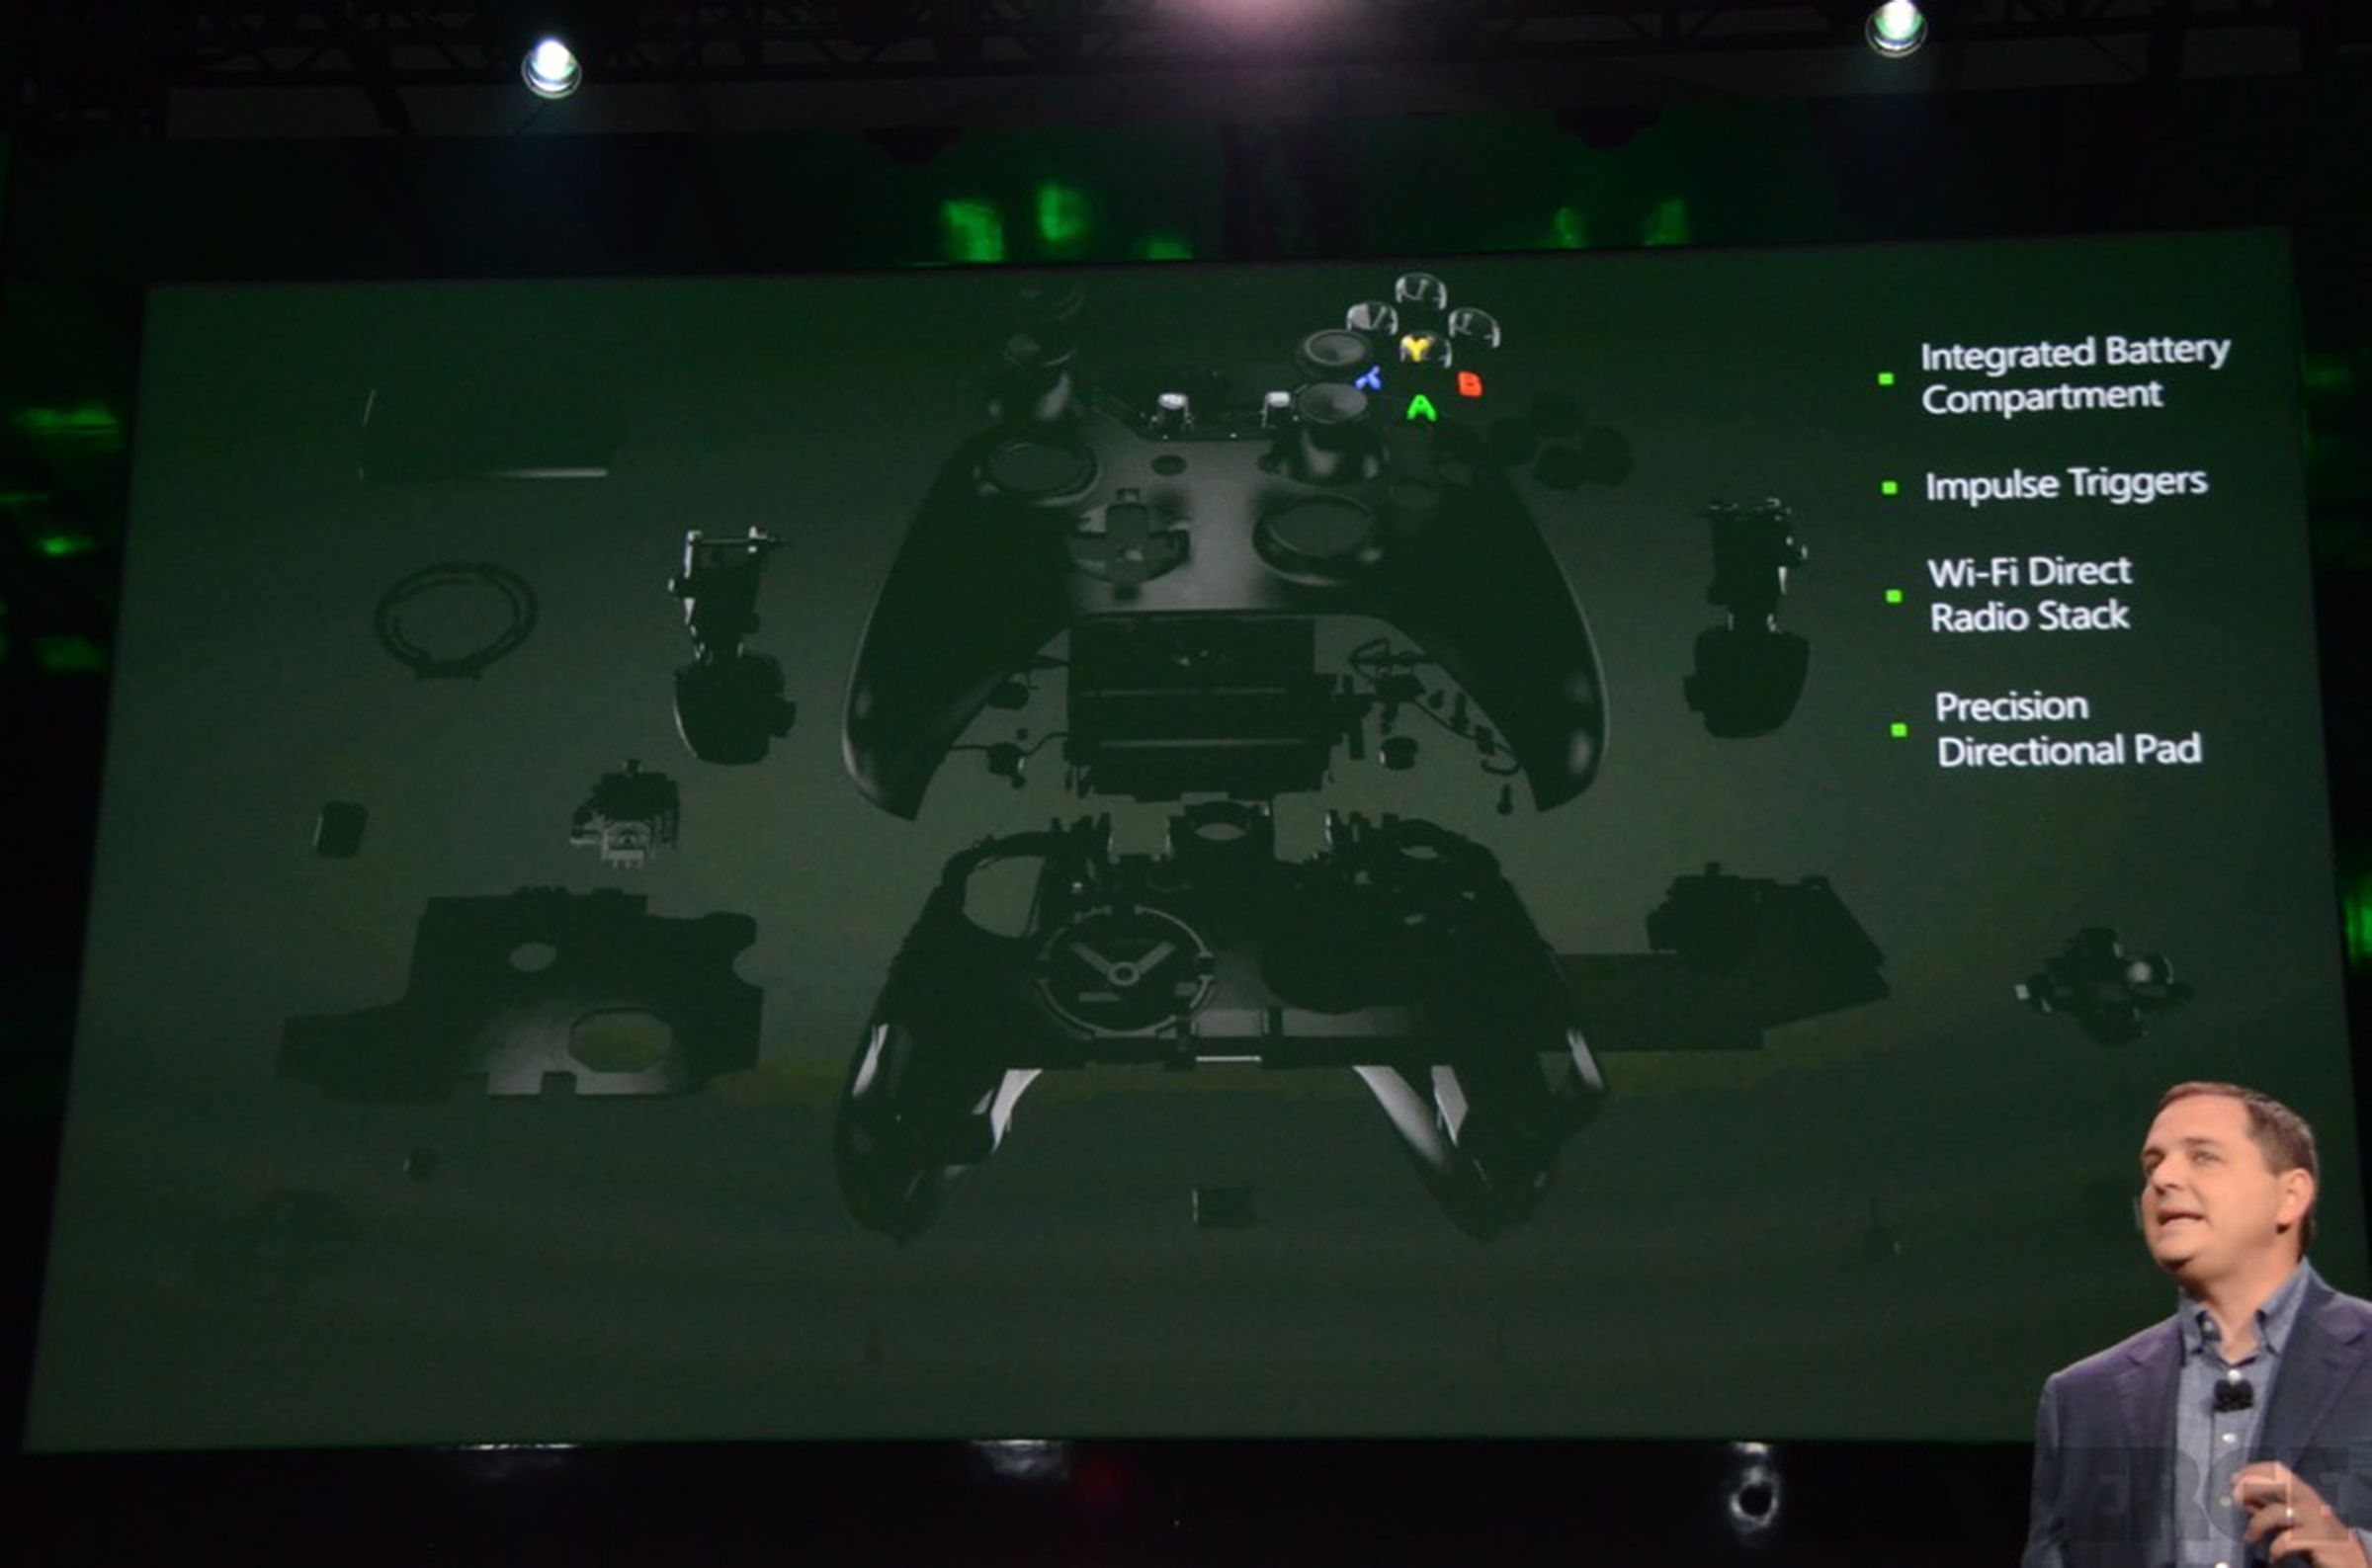 Xbox One controller photos